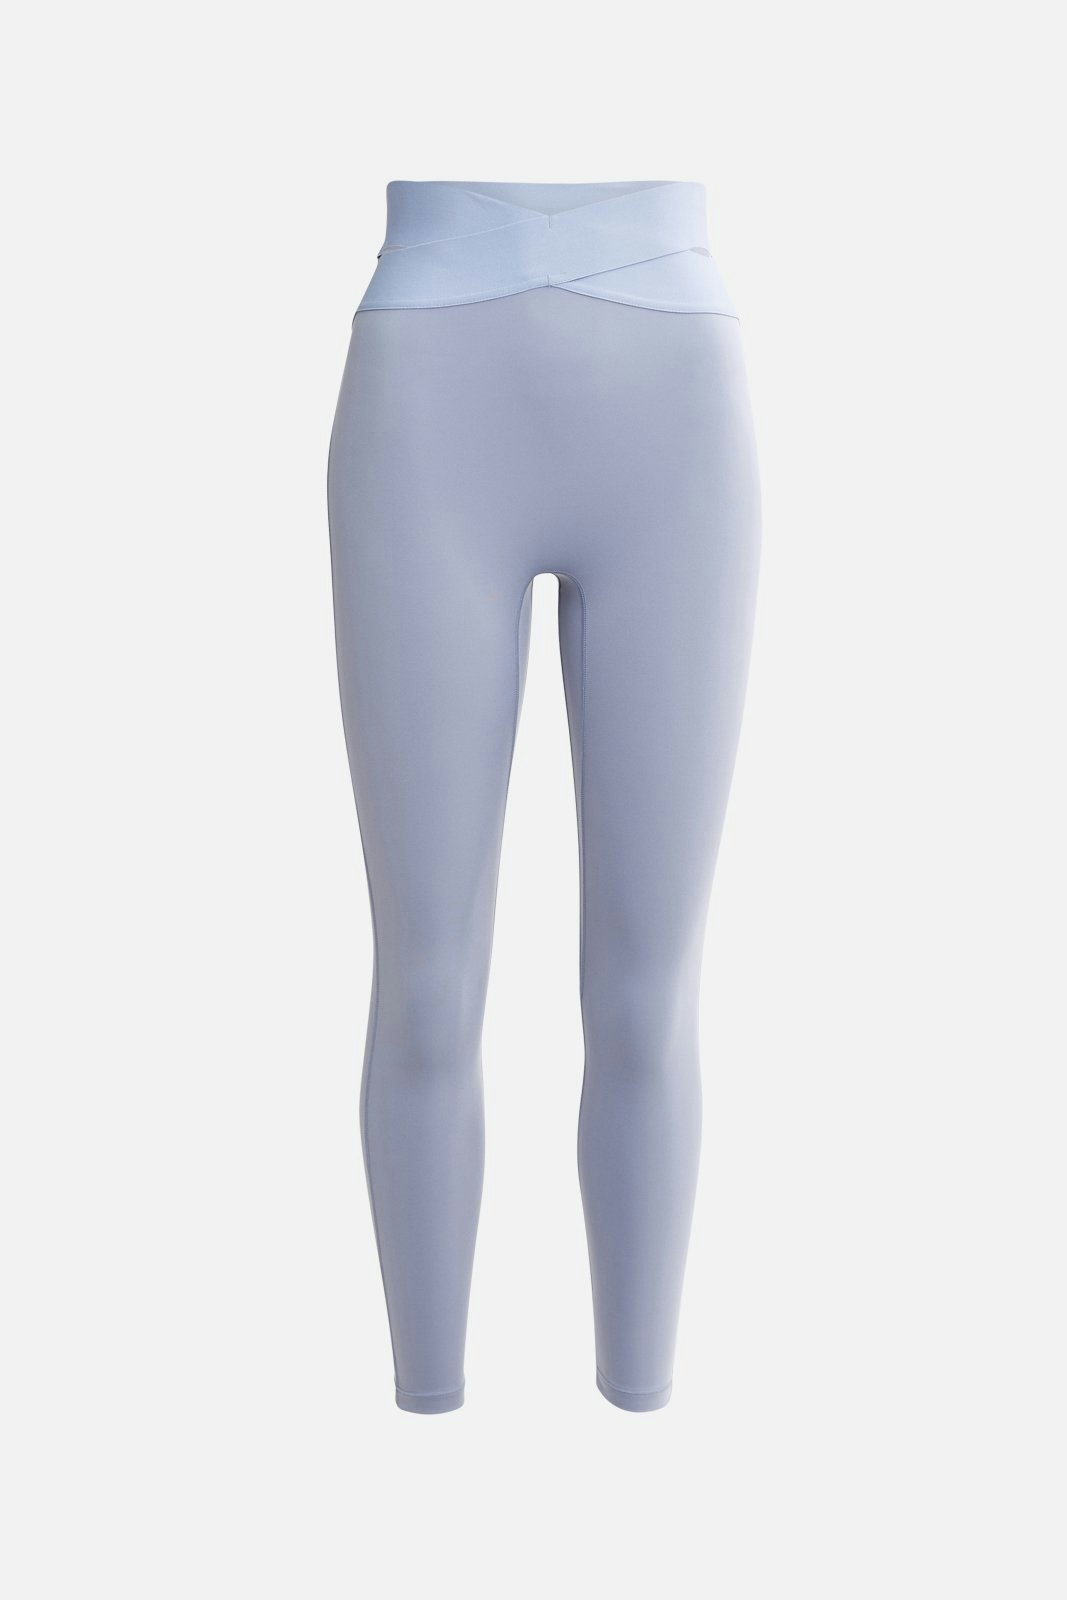 Tiktok aerie leggings : ODODOS Women's High Waisted Pattern Pocket  Full-Length Yoga Leggings